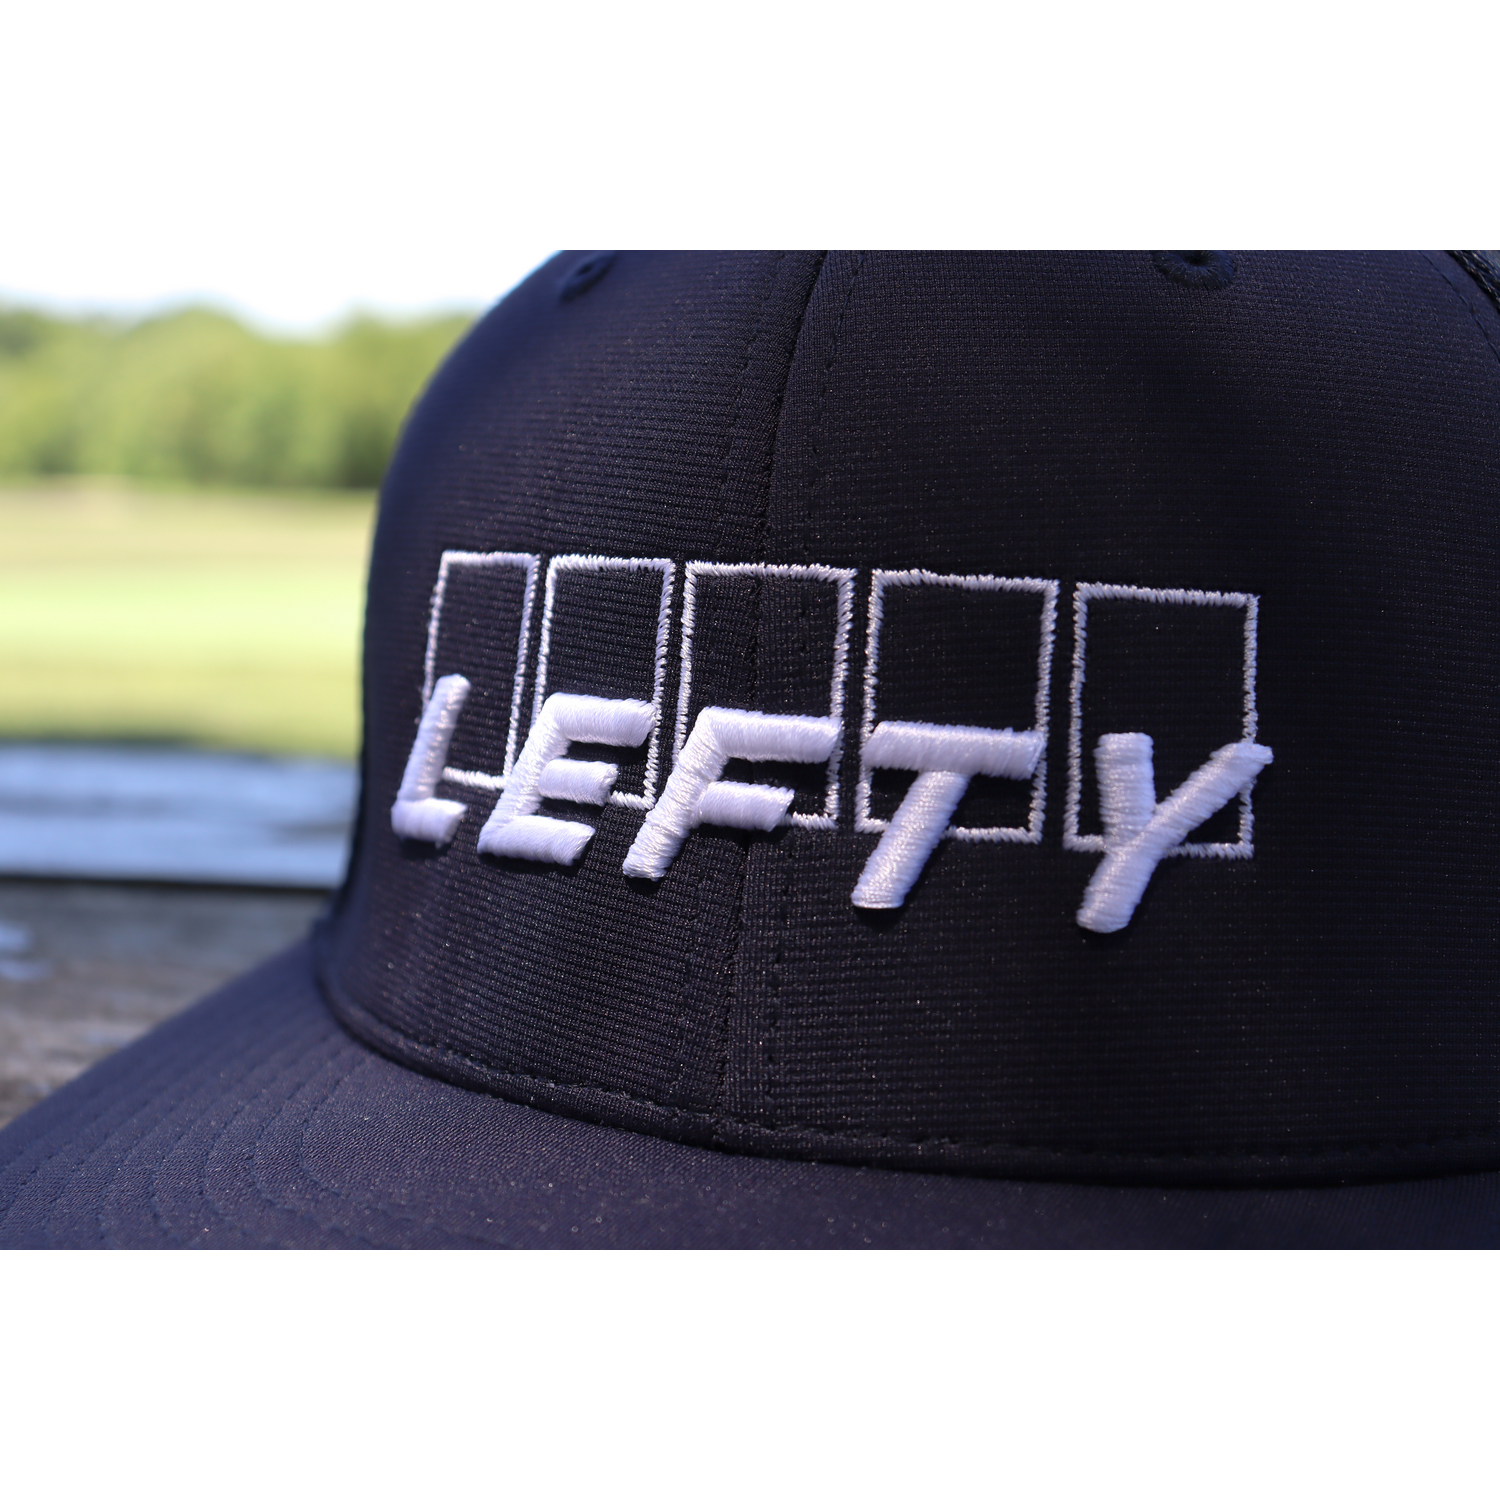 "LEFTY" Performance Flexfit